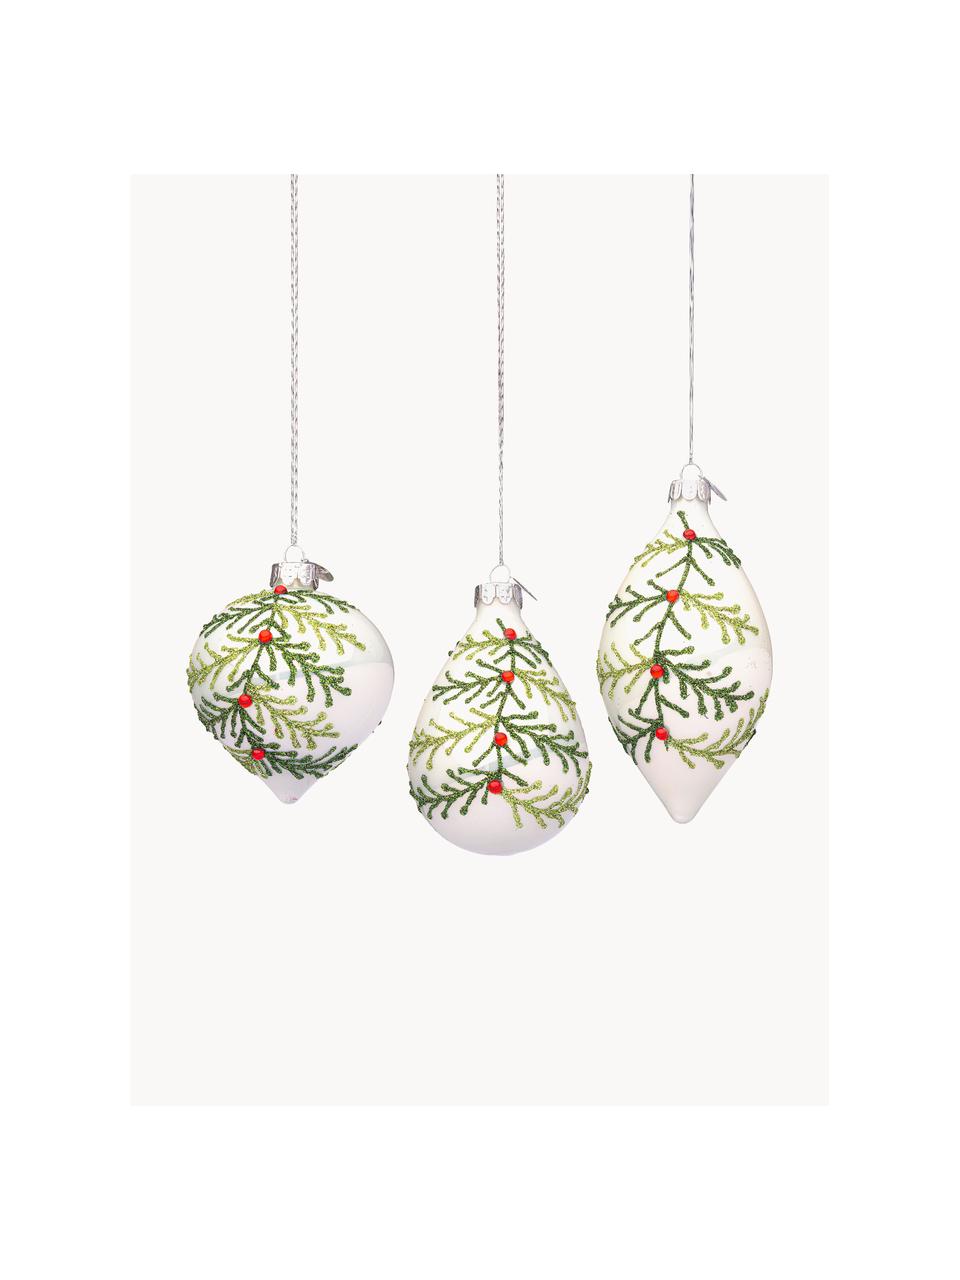 Kerstboomhangerset Laurie, 12-delig, Glas, Wit, groentinten, Set met verschillende groottes